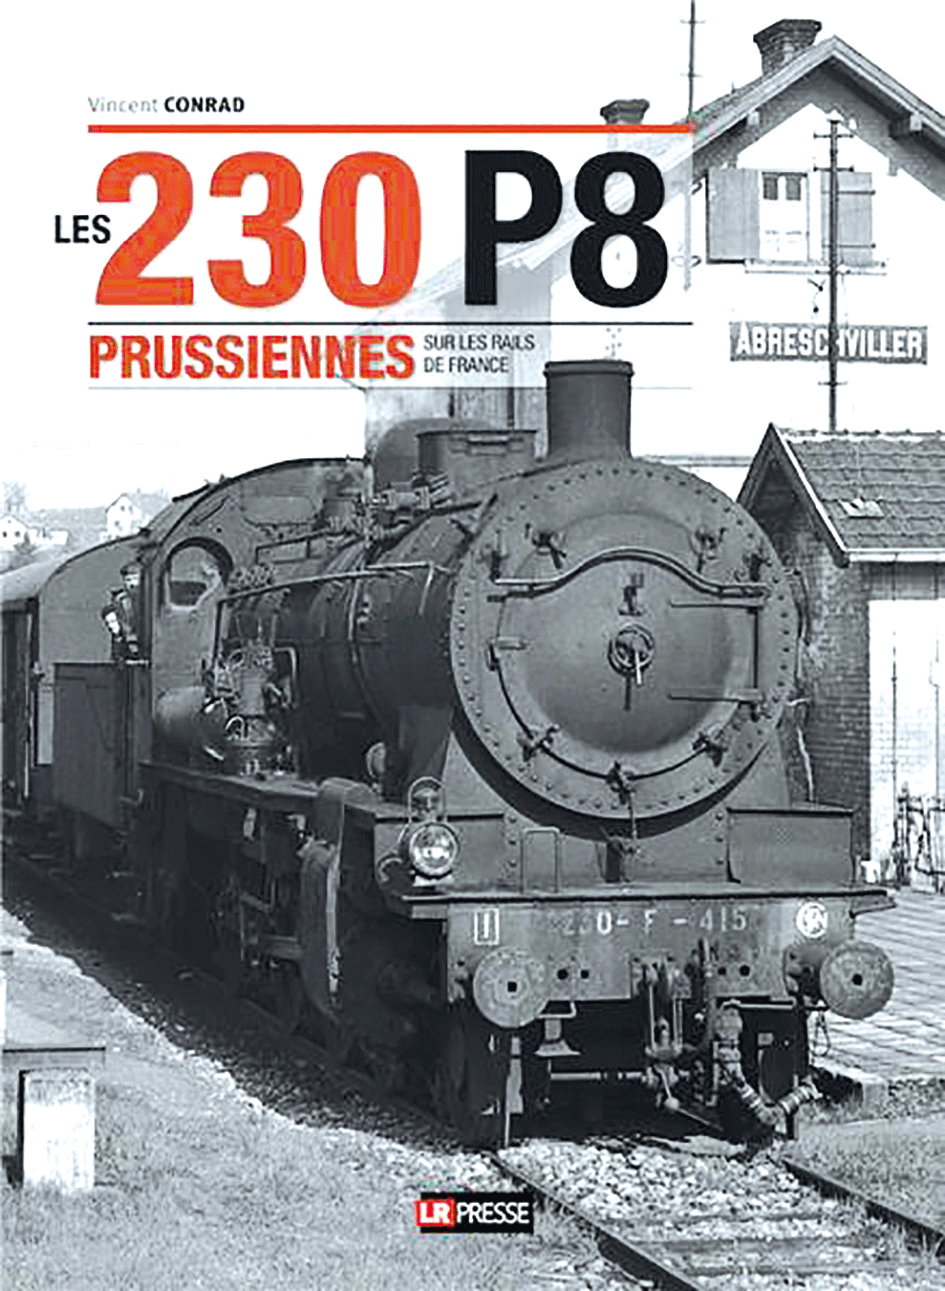 Les 230 P8 Prussiennes en France